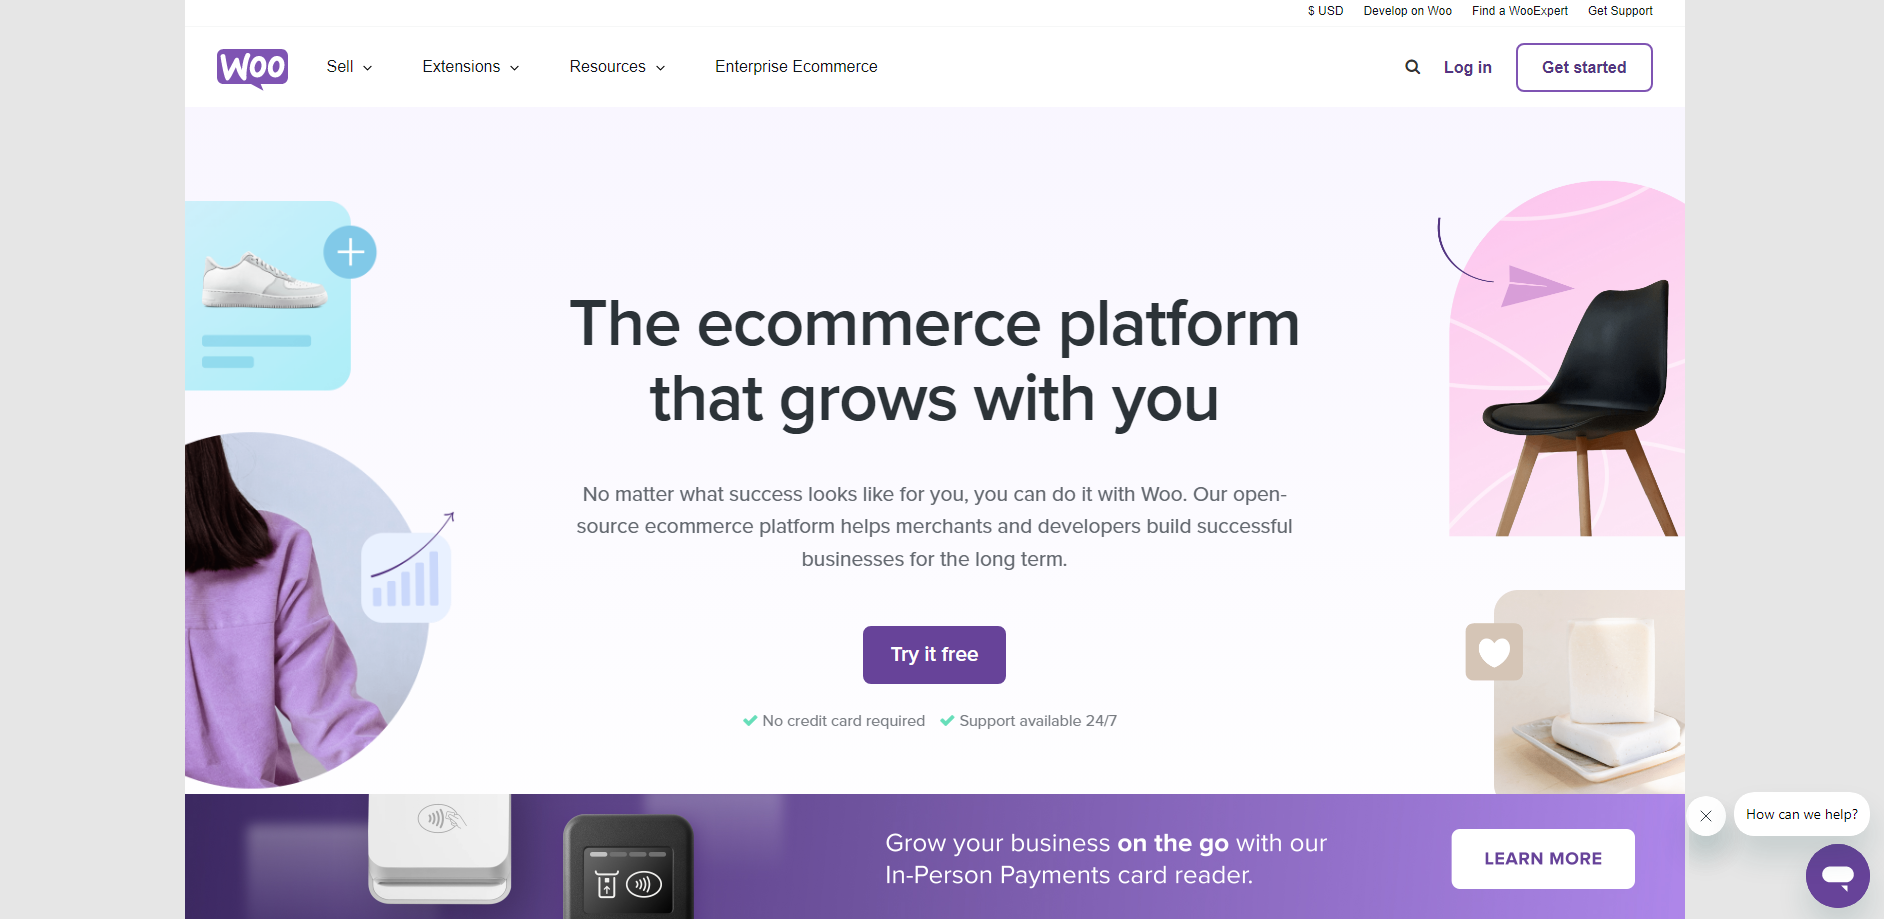 A screenshot of the WooCommerce eCommerce platform.